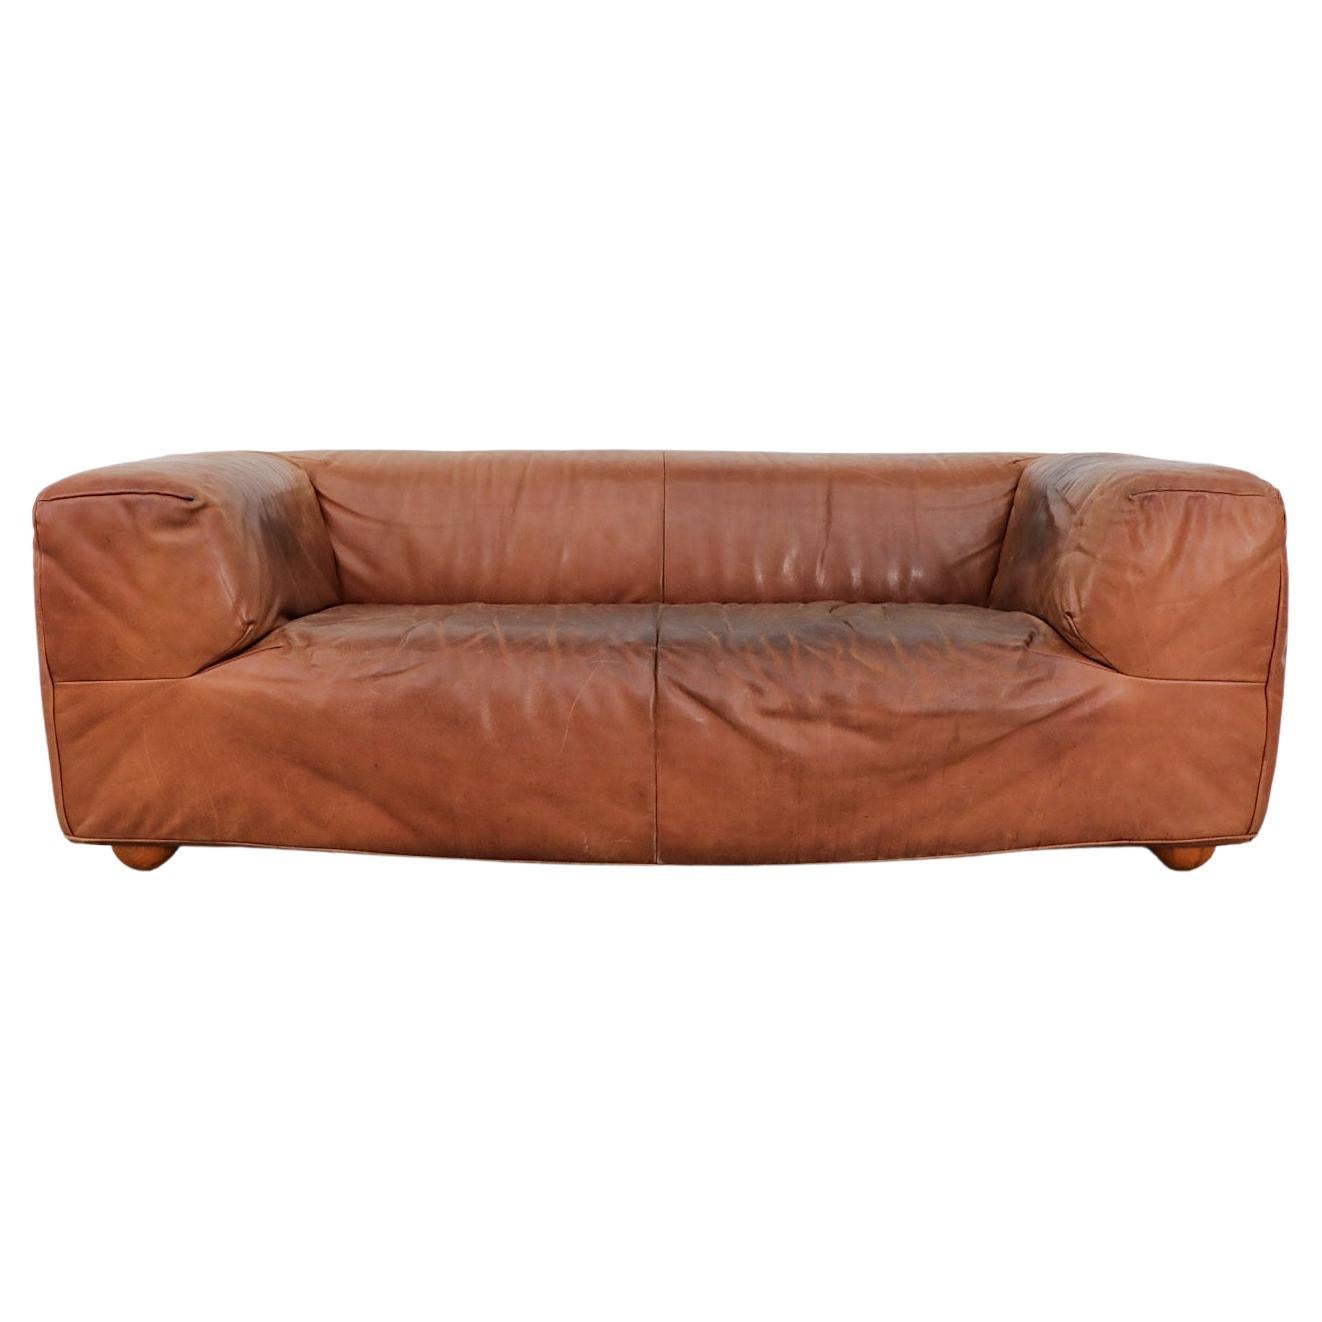 Cognac Leather "Aztec" Sofa By Gerard Van Den Berg For Montis